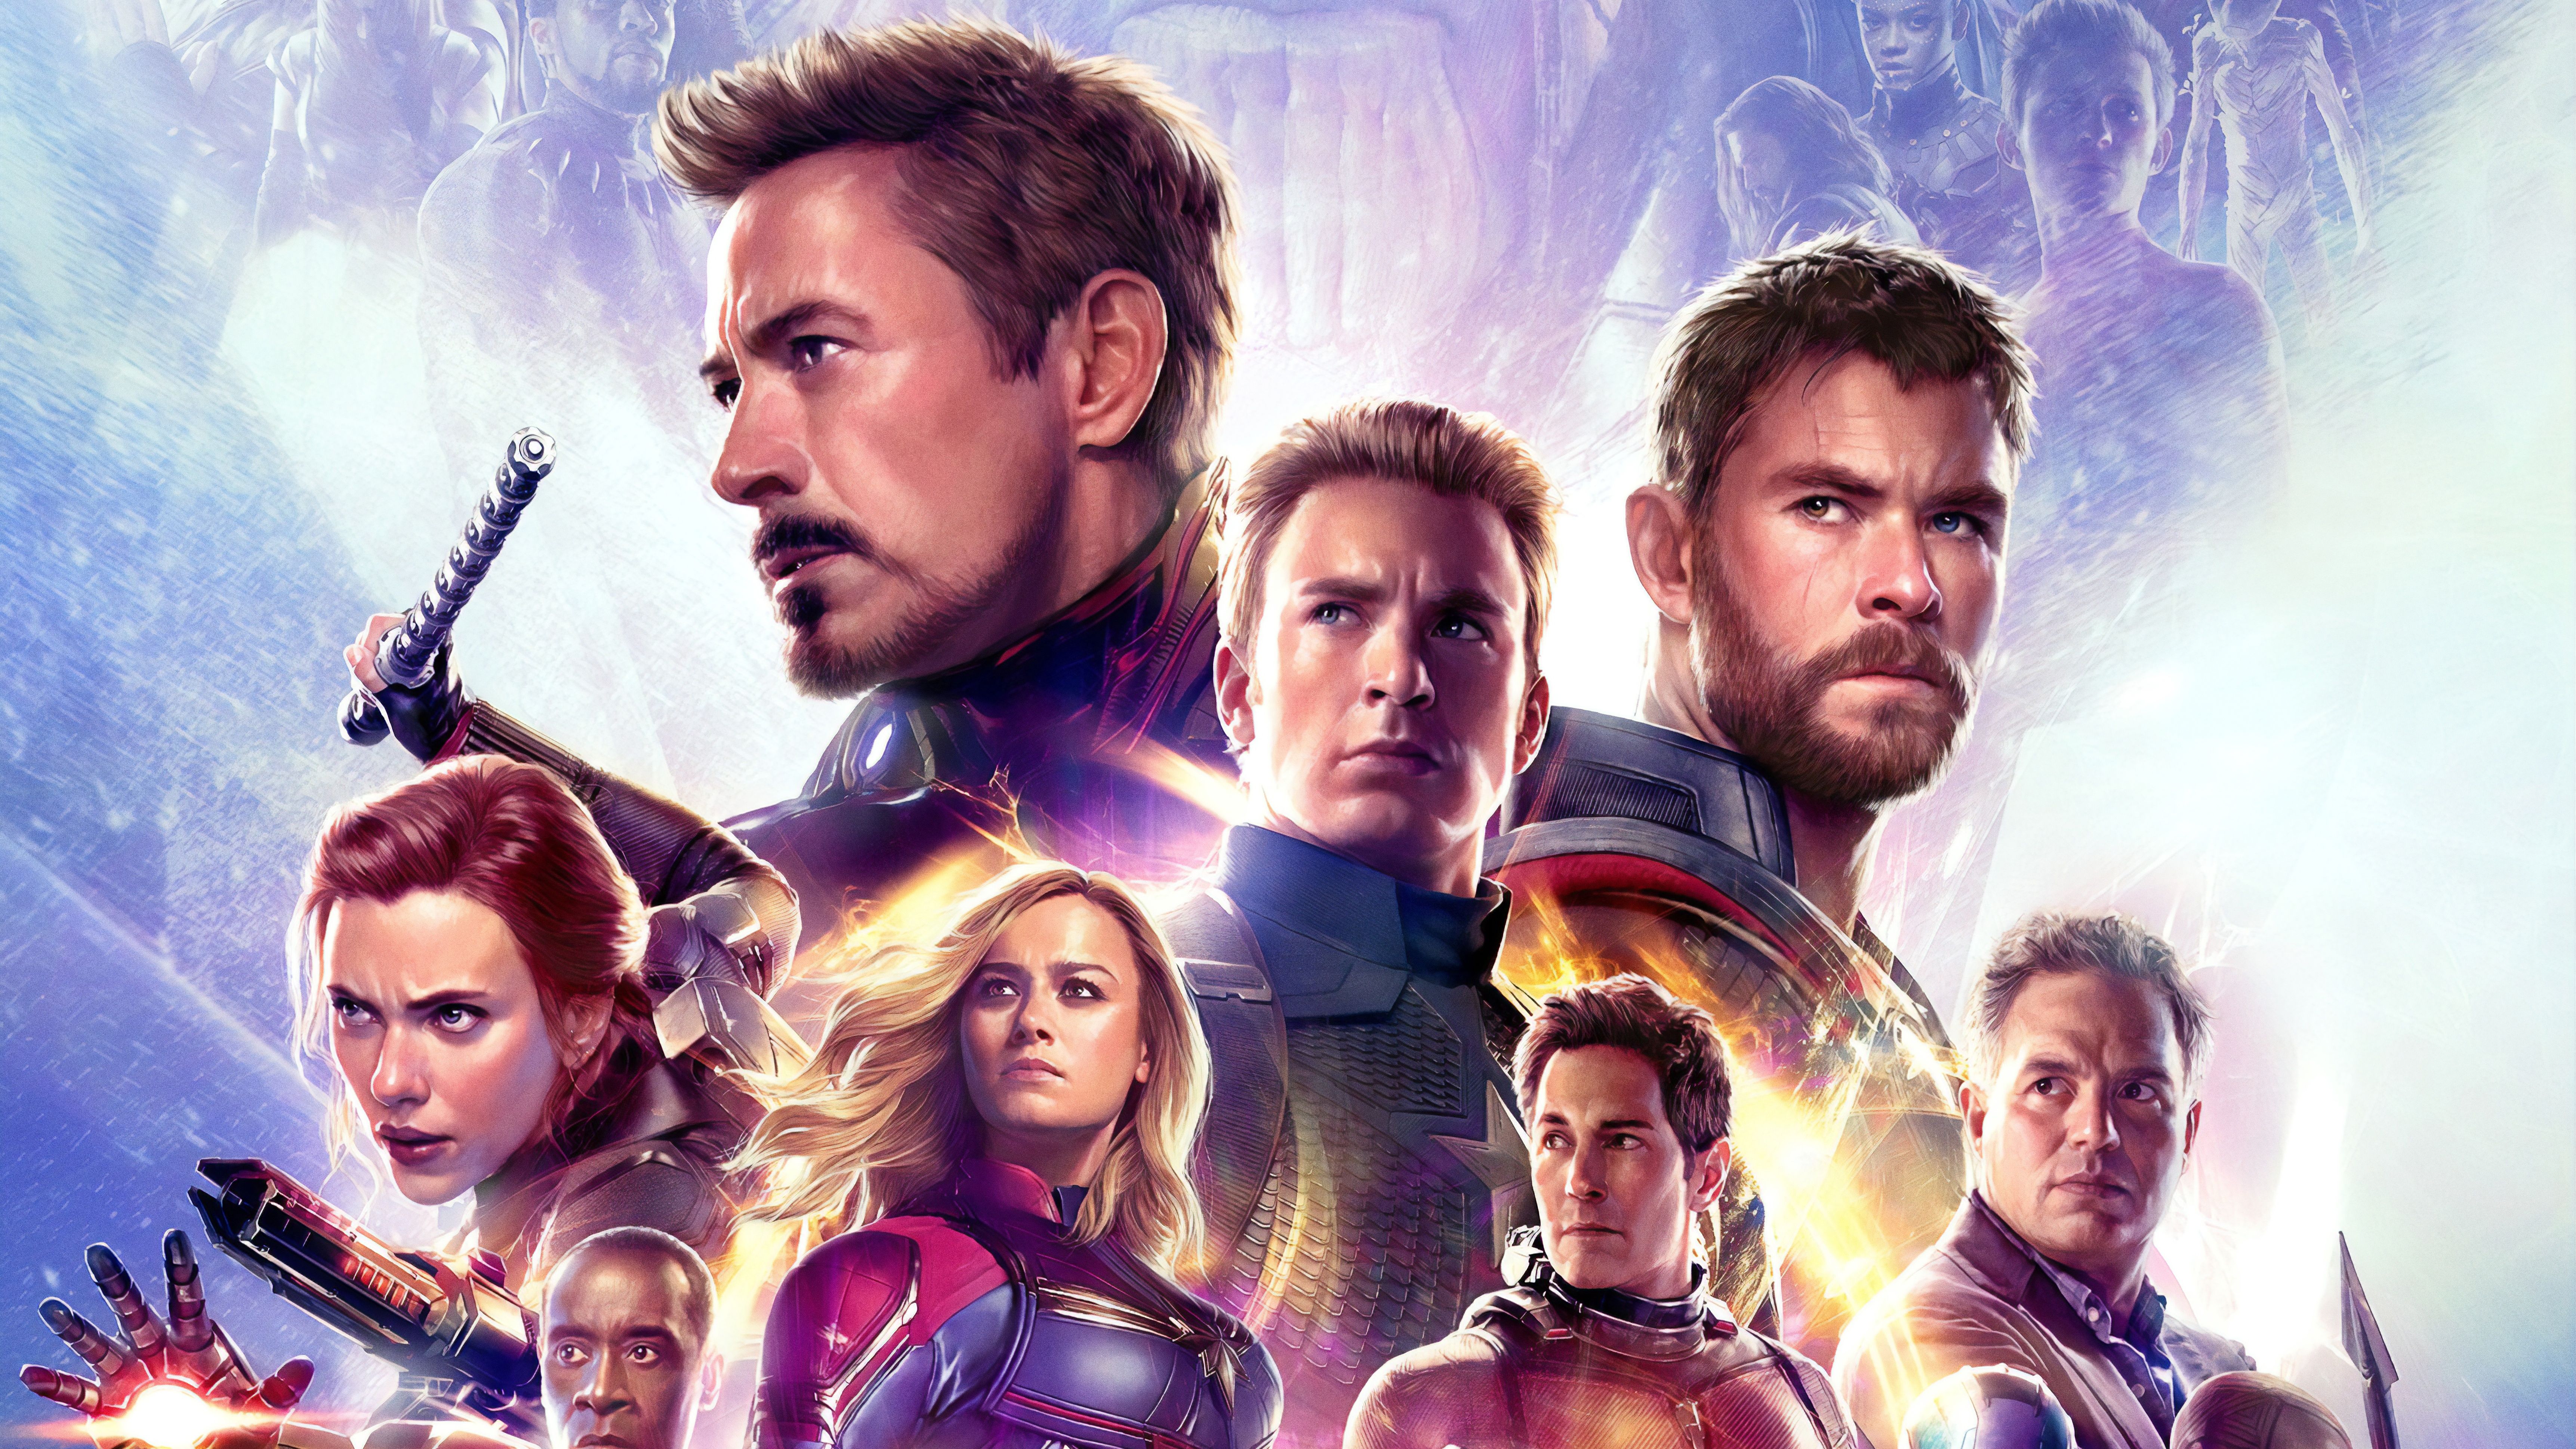 8K Avengers Endgame Poster Wallpapers